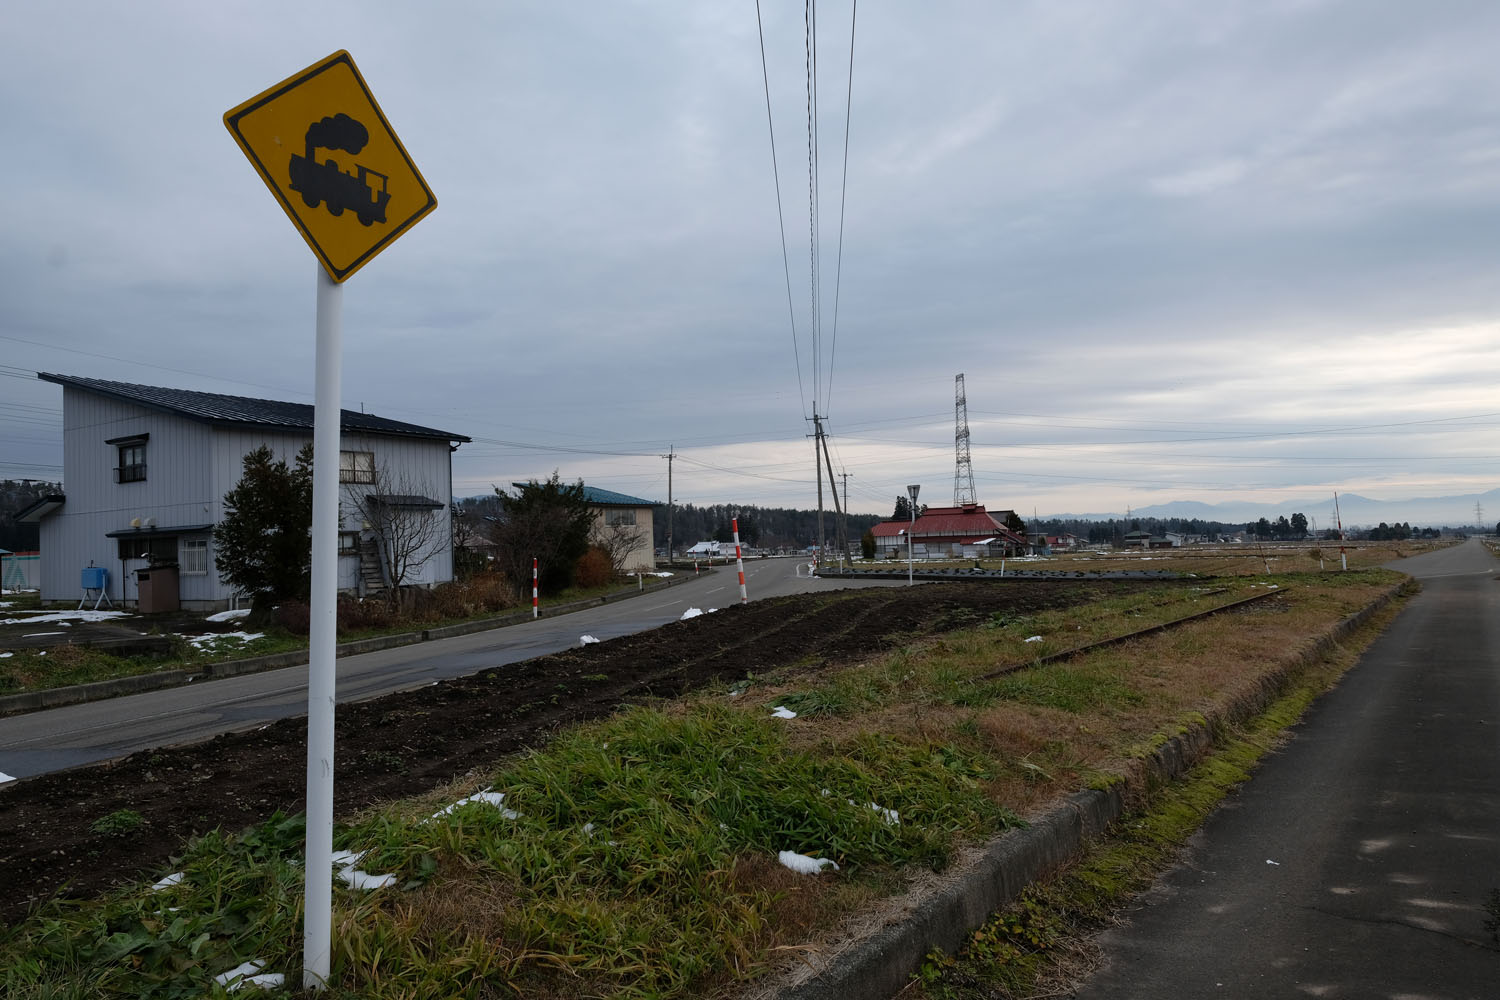 会津加納駅跡の先に突如として現れる遺構。緑地帯をよく見るとレールが残されている。踏切注意の標識はモニュメントとして設置したものと思われる。2016年12月13日撮影。